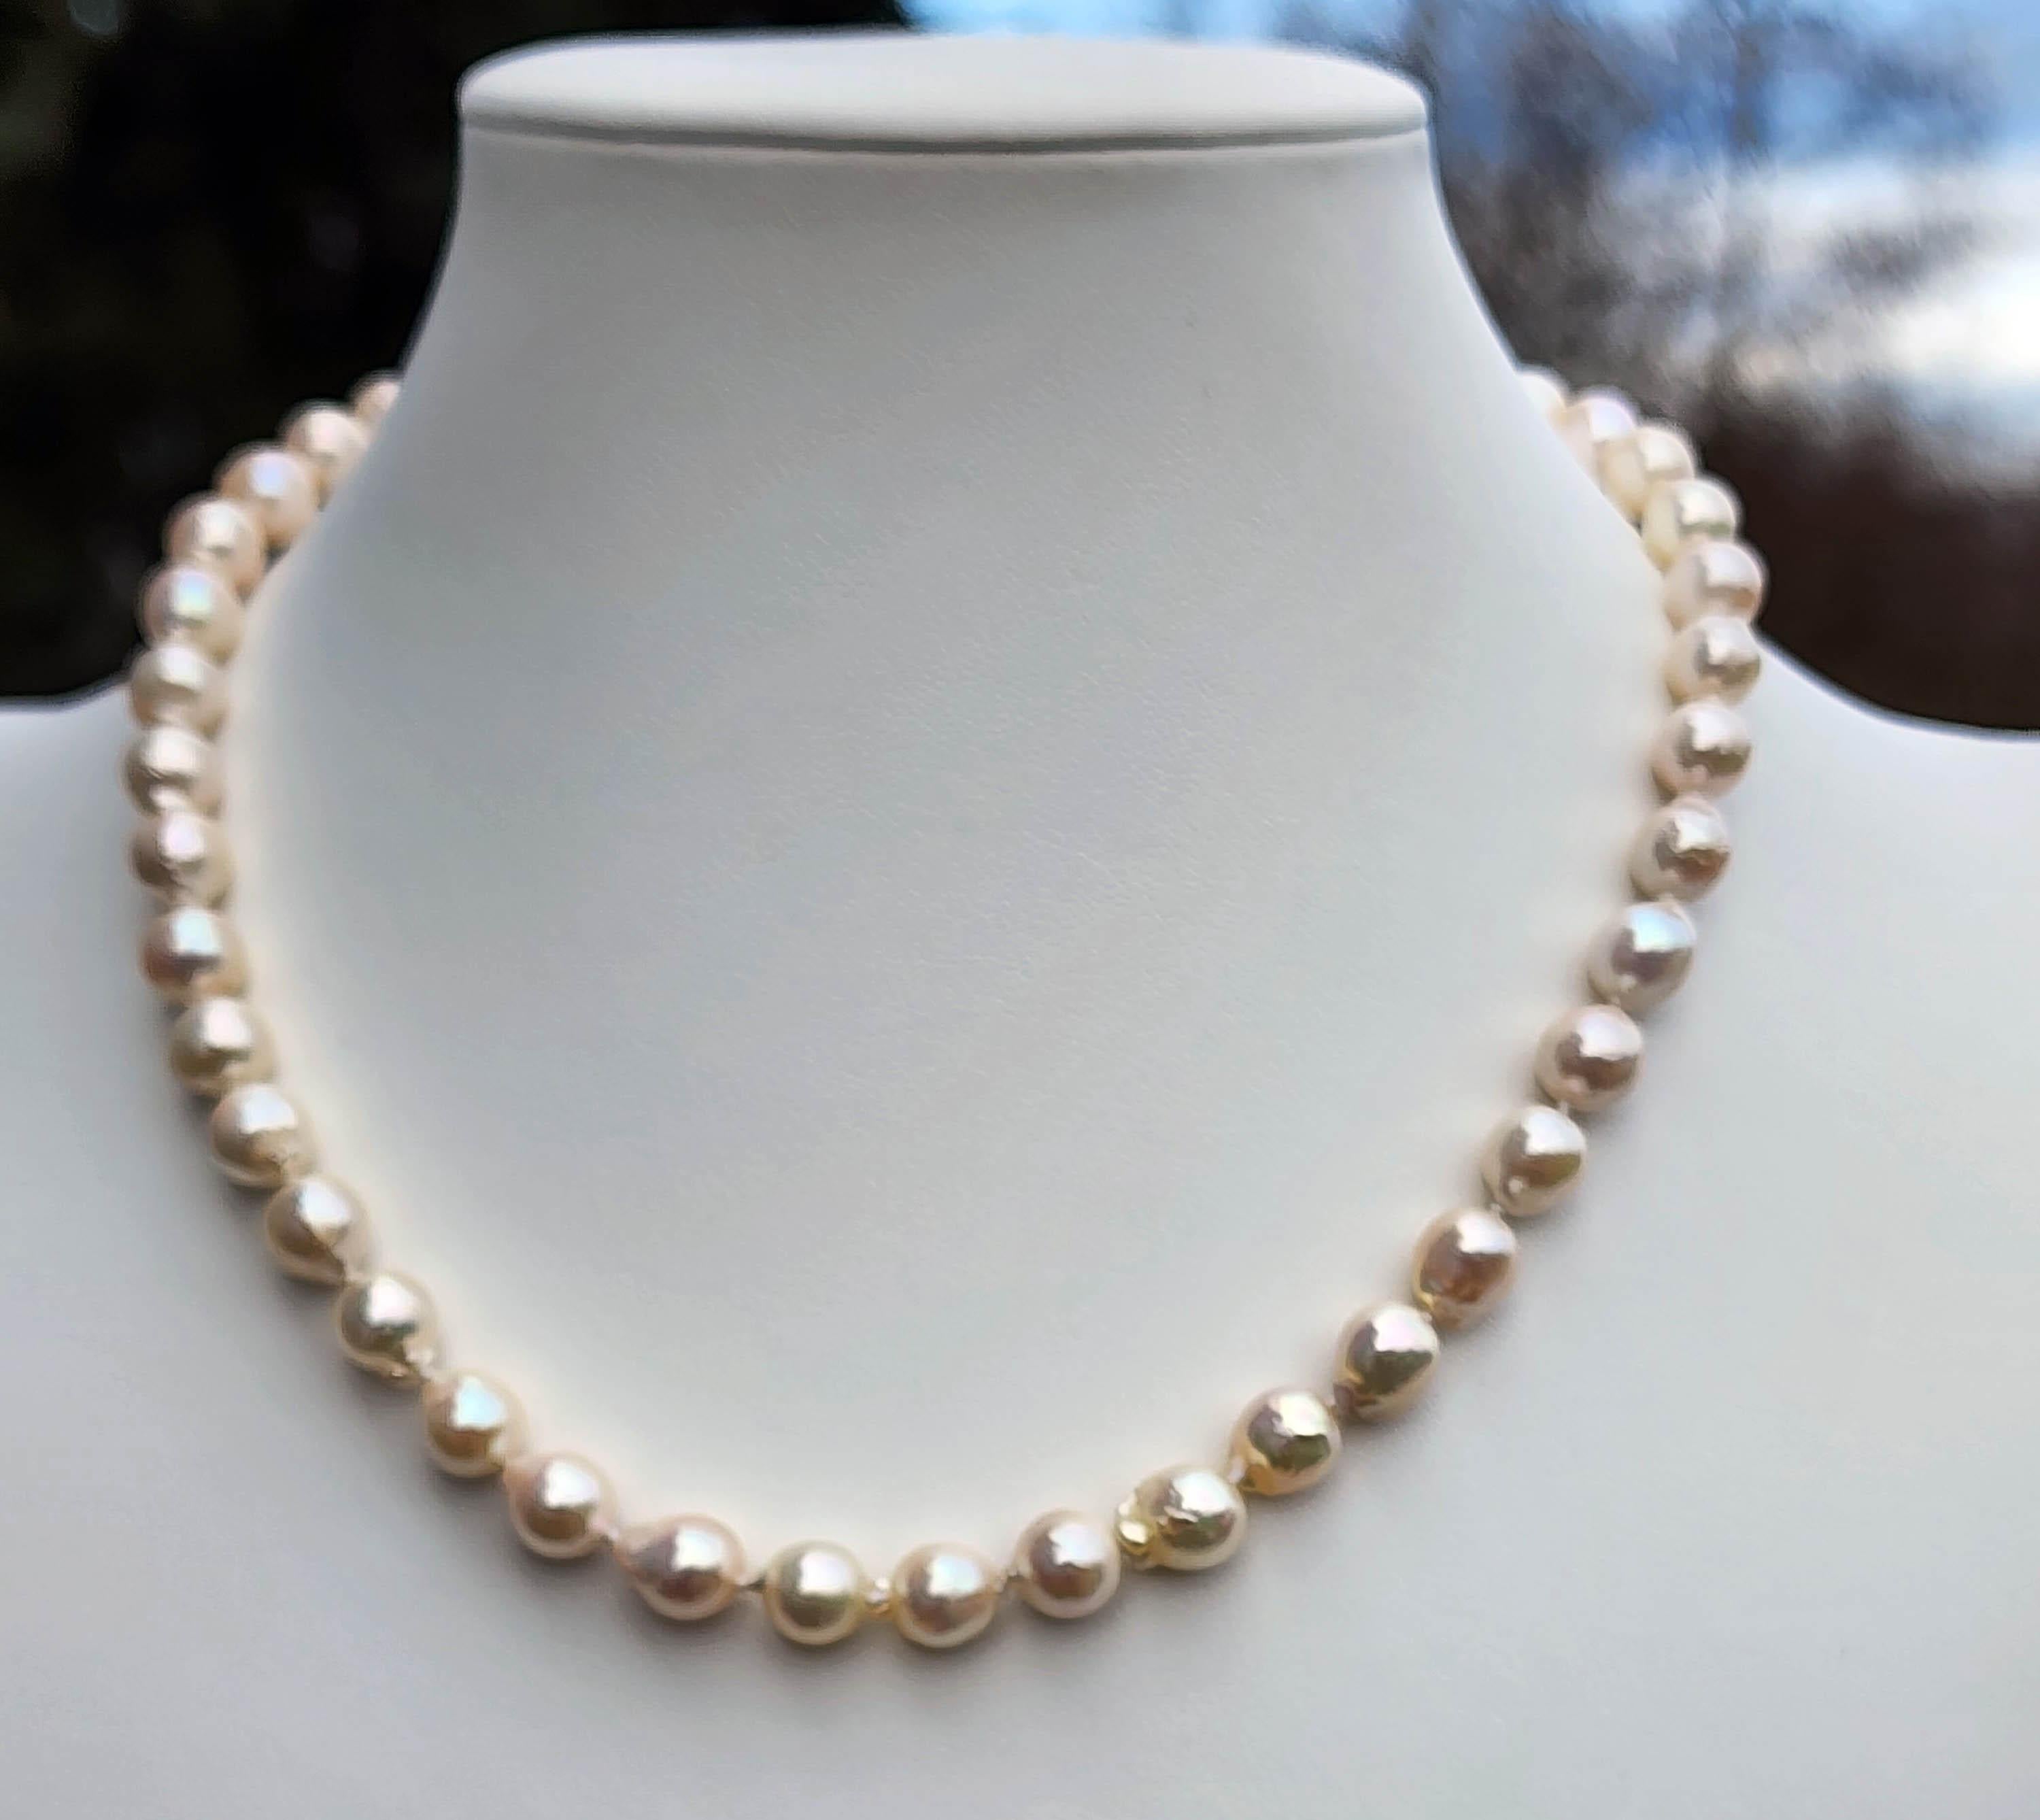 Eine Perlenkette und ein Armband aus Salzwasser-Zuchtperlen. Die Halskette ist 16,5 Zoll lang, und die Perlen sind 8,2 mm groß. Die Halskette besteht aus 23 Perlen. Das Armband ist 6,5 Zoll lang und die Perlen entsprechen denen der Halskette mit